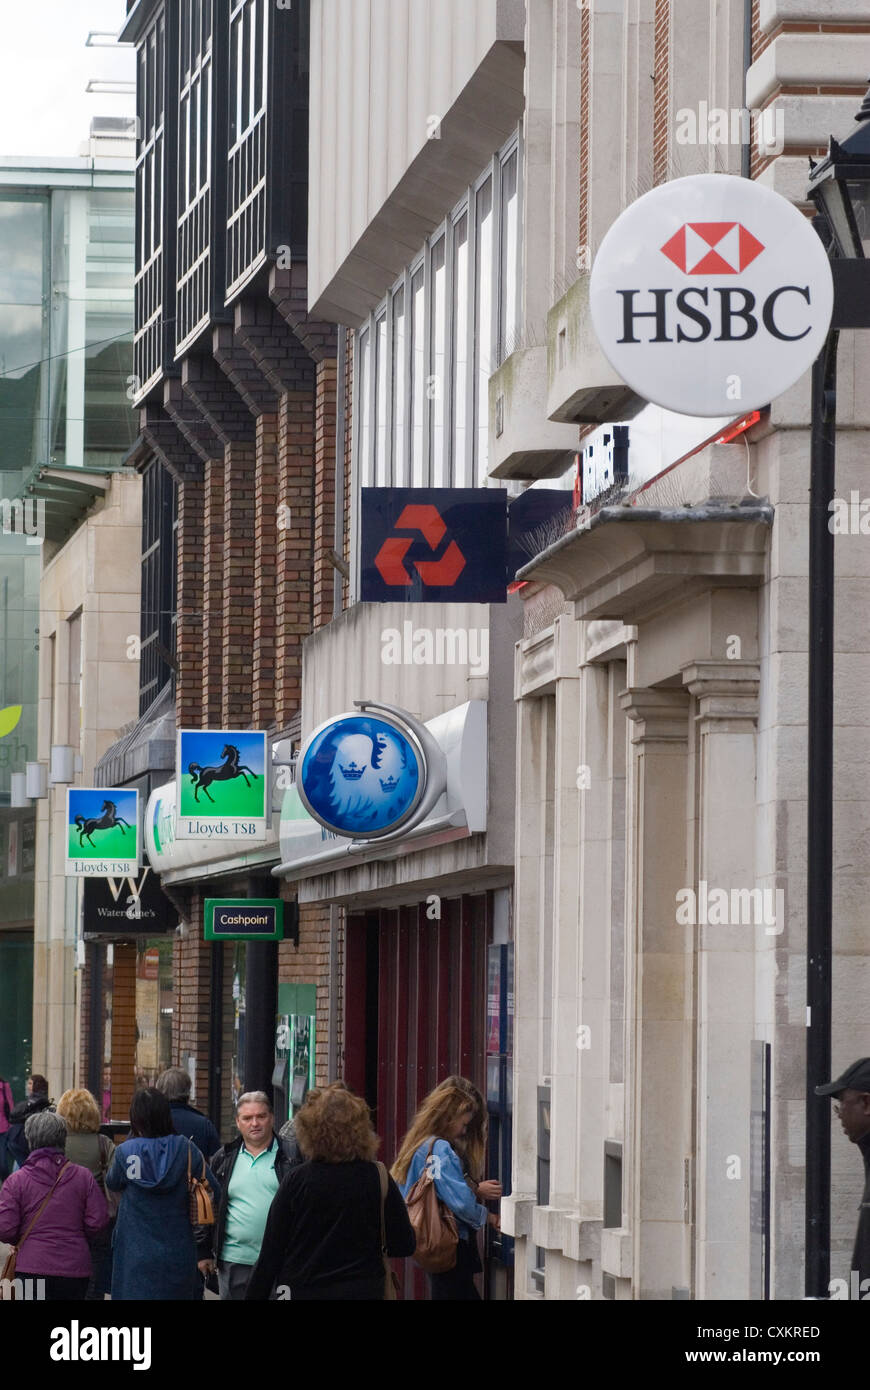 High Street Banks unterschreibt Heimatbezirke UK 2007. Die 2000er Jahre Leute, die in der Hauptstraße einkaufen, eine Frau, die einen Geldautomaten benutzt, als es noch Banken in einer lokalen Hauptstraße gab. HSBC, Nat West, National Westminster Bank, Barclays, Lloyds, TSB und einen Cashpoint HOMER SYKES Stockfoto